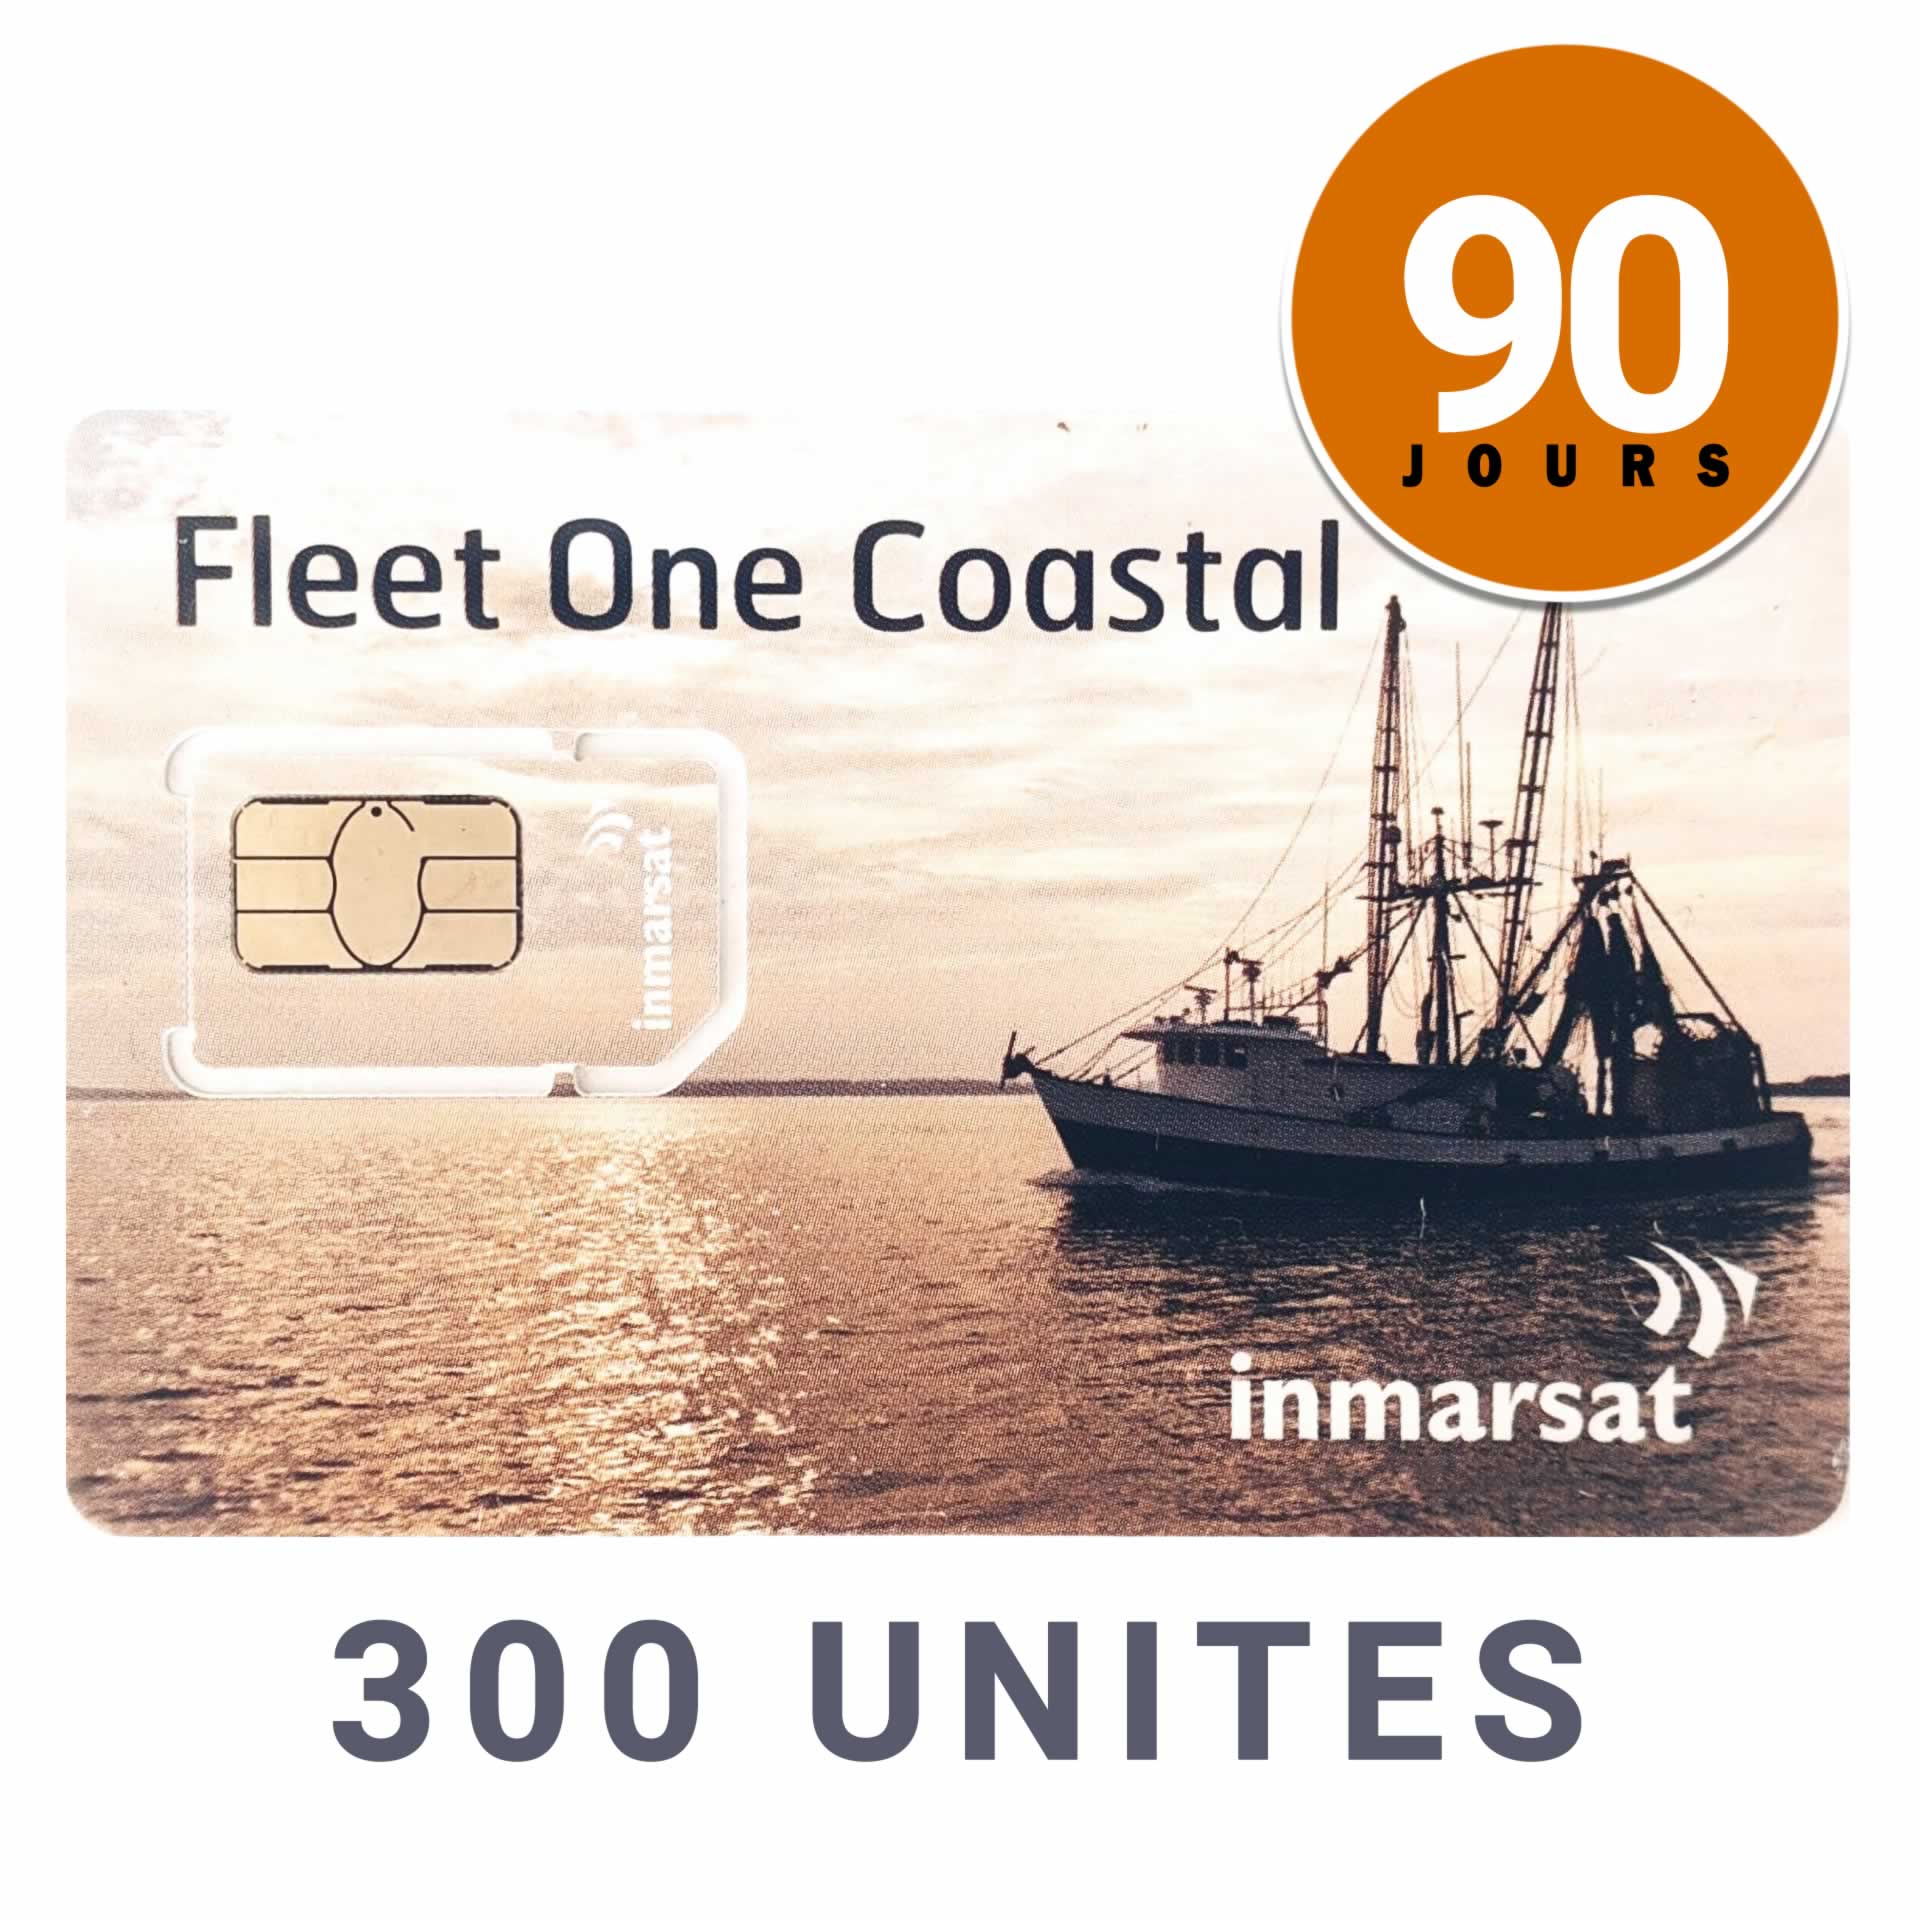 INMARSAT Prepaid-Karte Aufladbar CÔTIER FLEET ONE - 300 UNITES - 90 JOURS